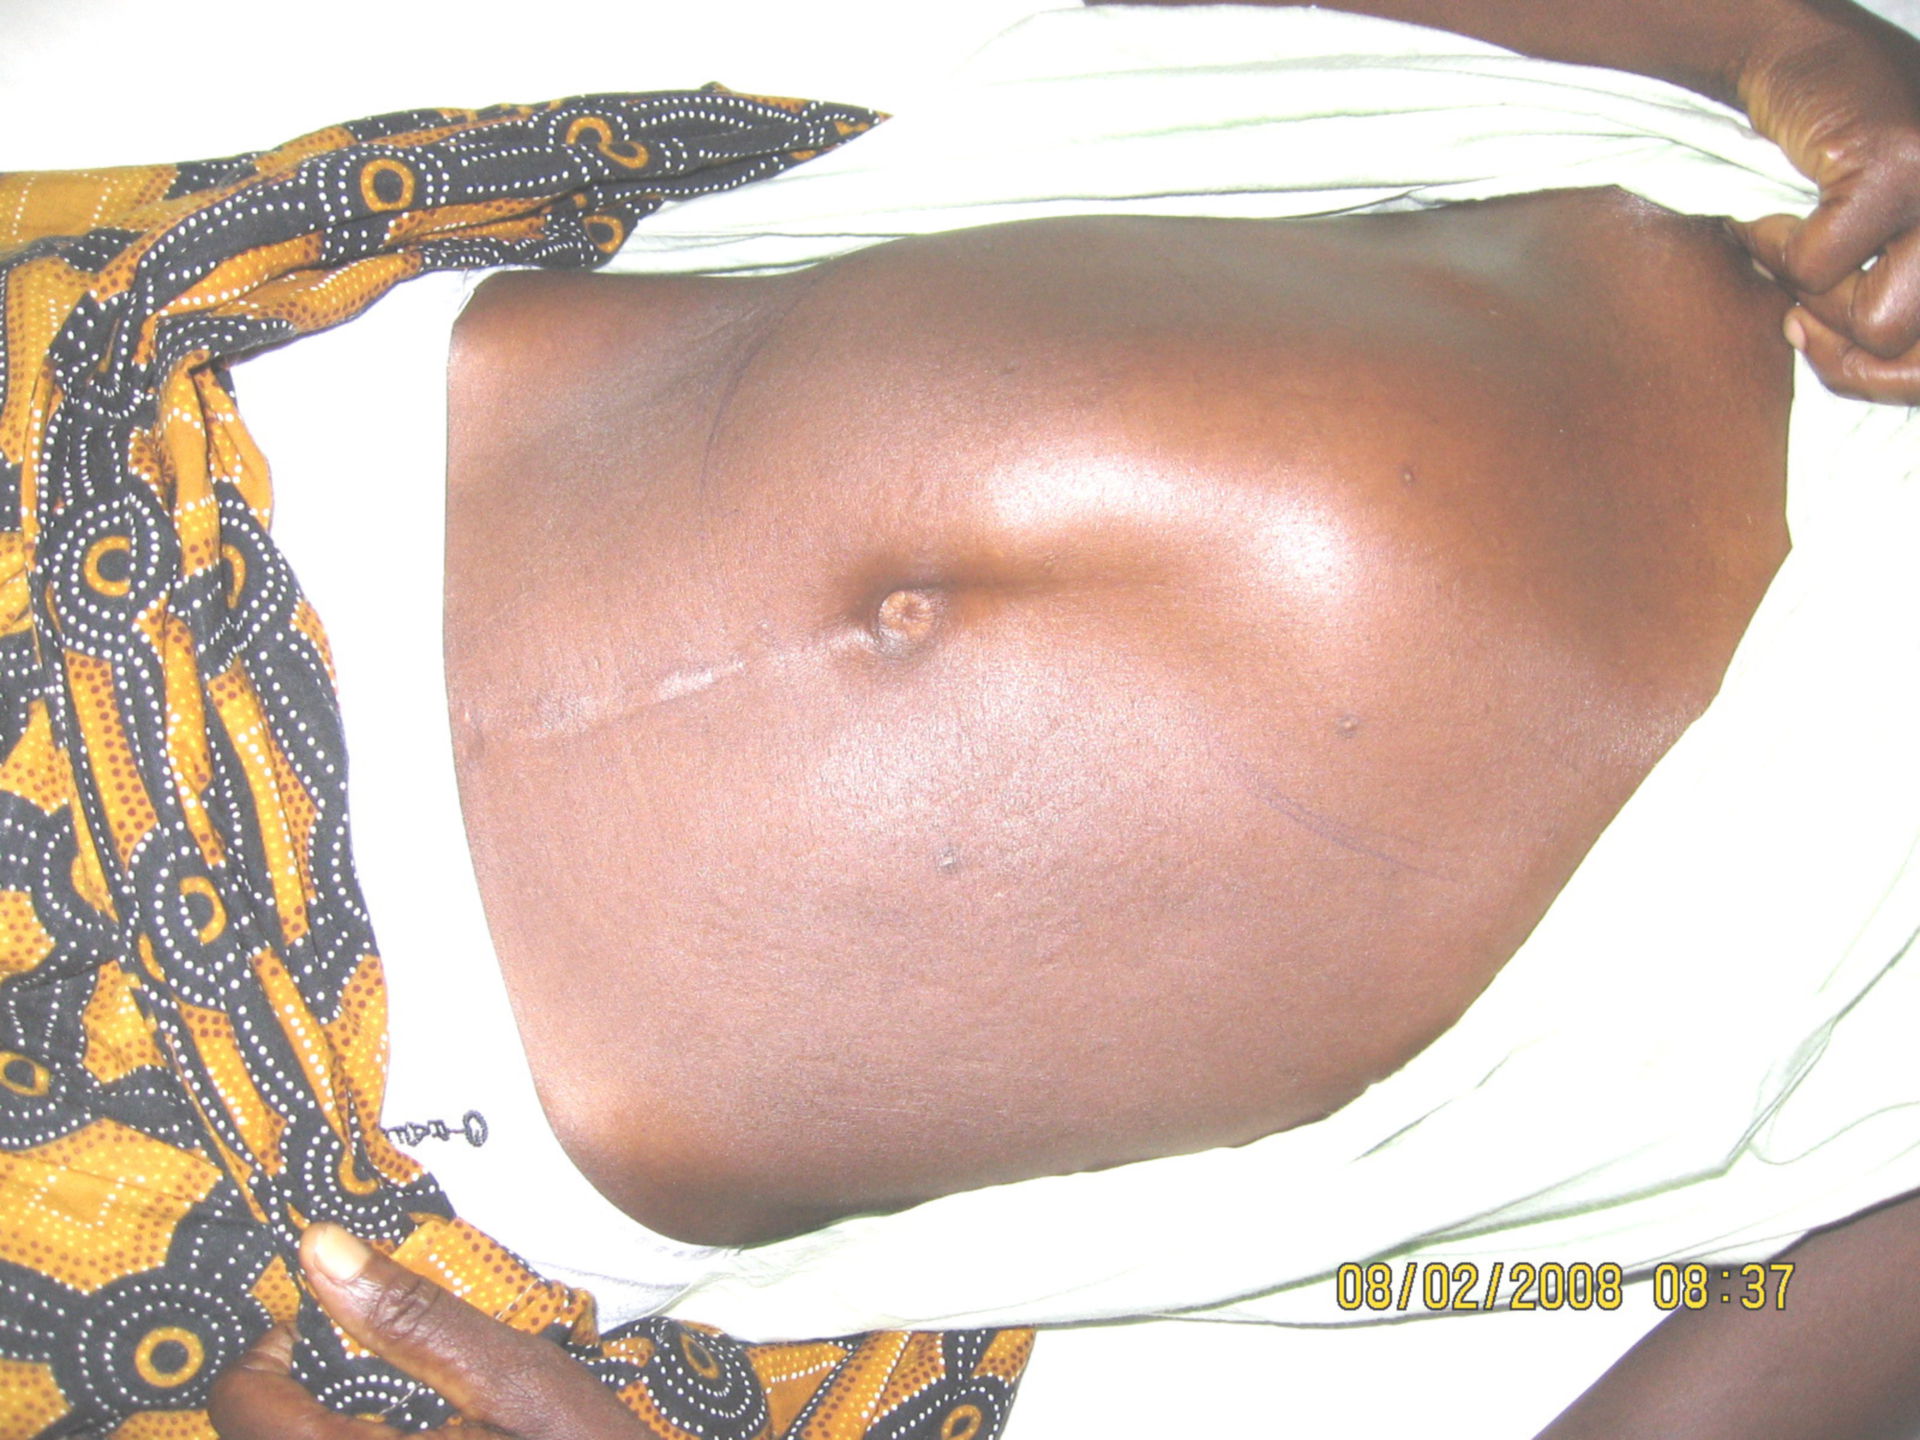 Patient in a ward in Akwatia, Ghana